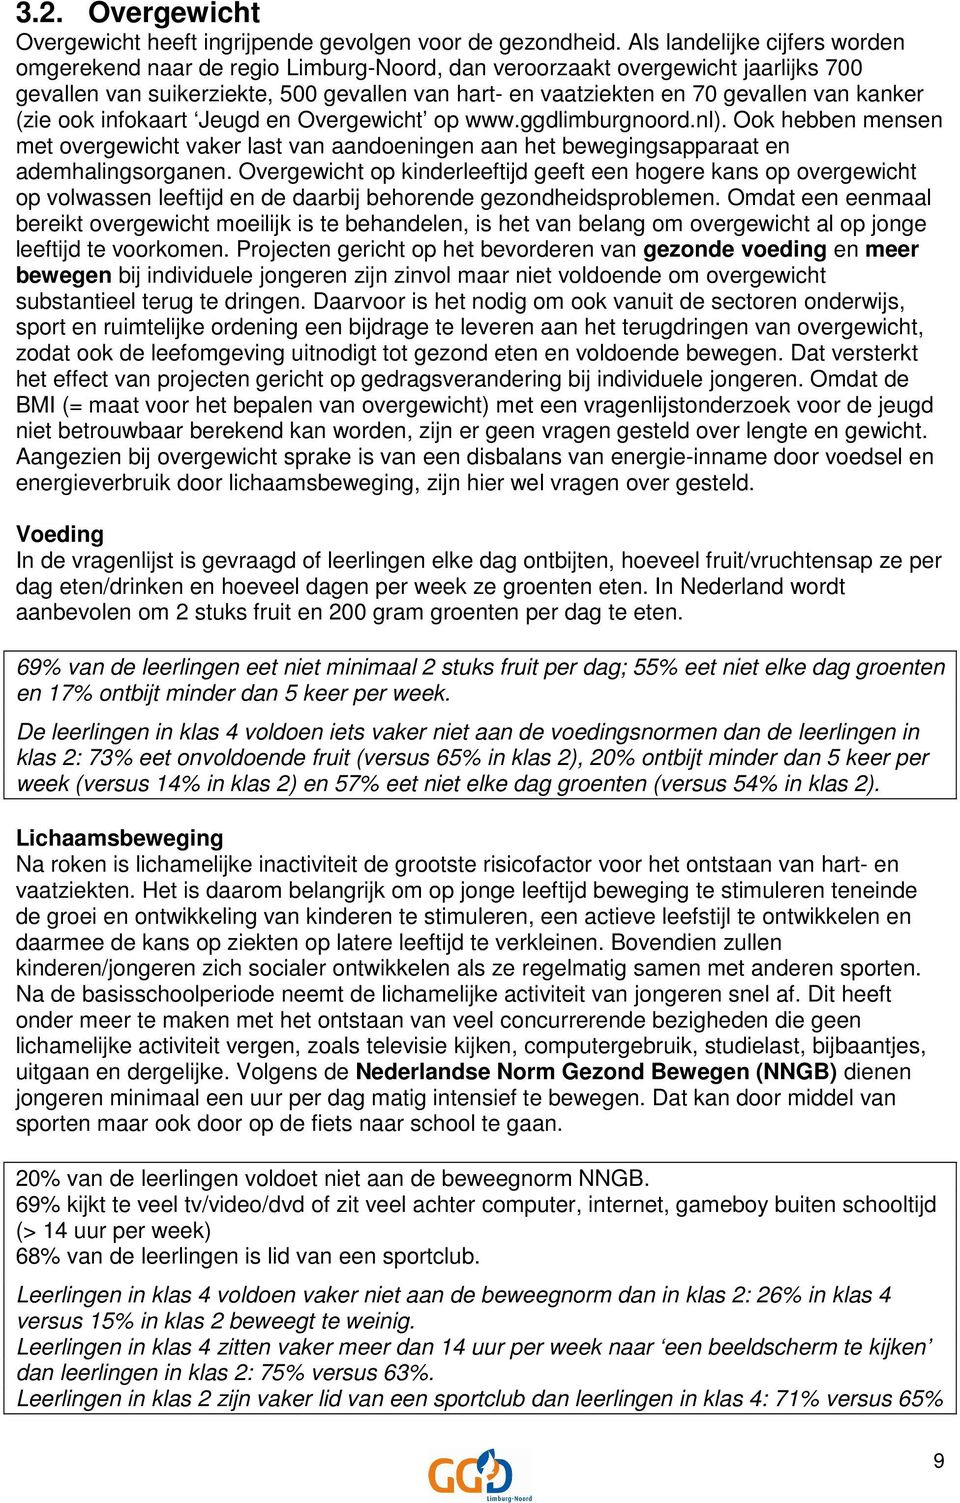 kanker (zie ook infokaart Jeugd en Overgewicht op www.ggdlimburgnoord.nl). Ook hebben mensen met overgewicht vaker last van aandoeningen aan het bewegingsapparaat en ademhalingsorganen.